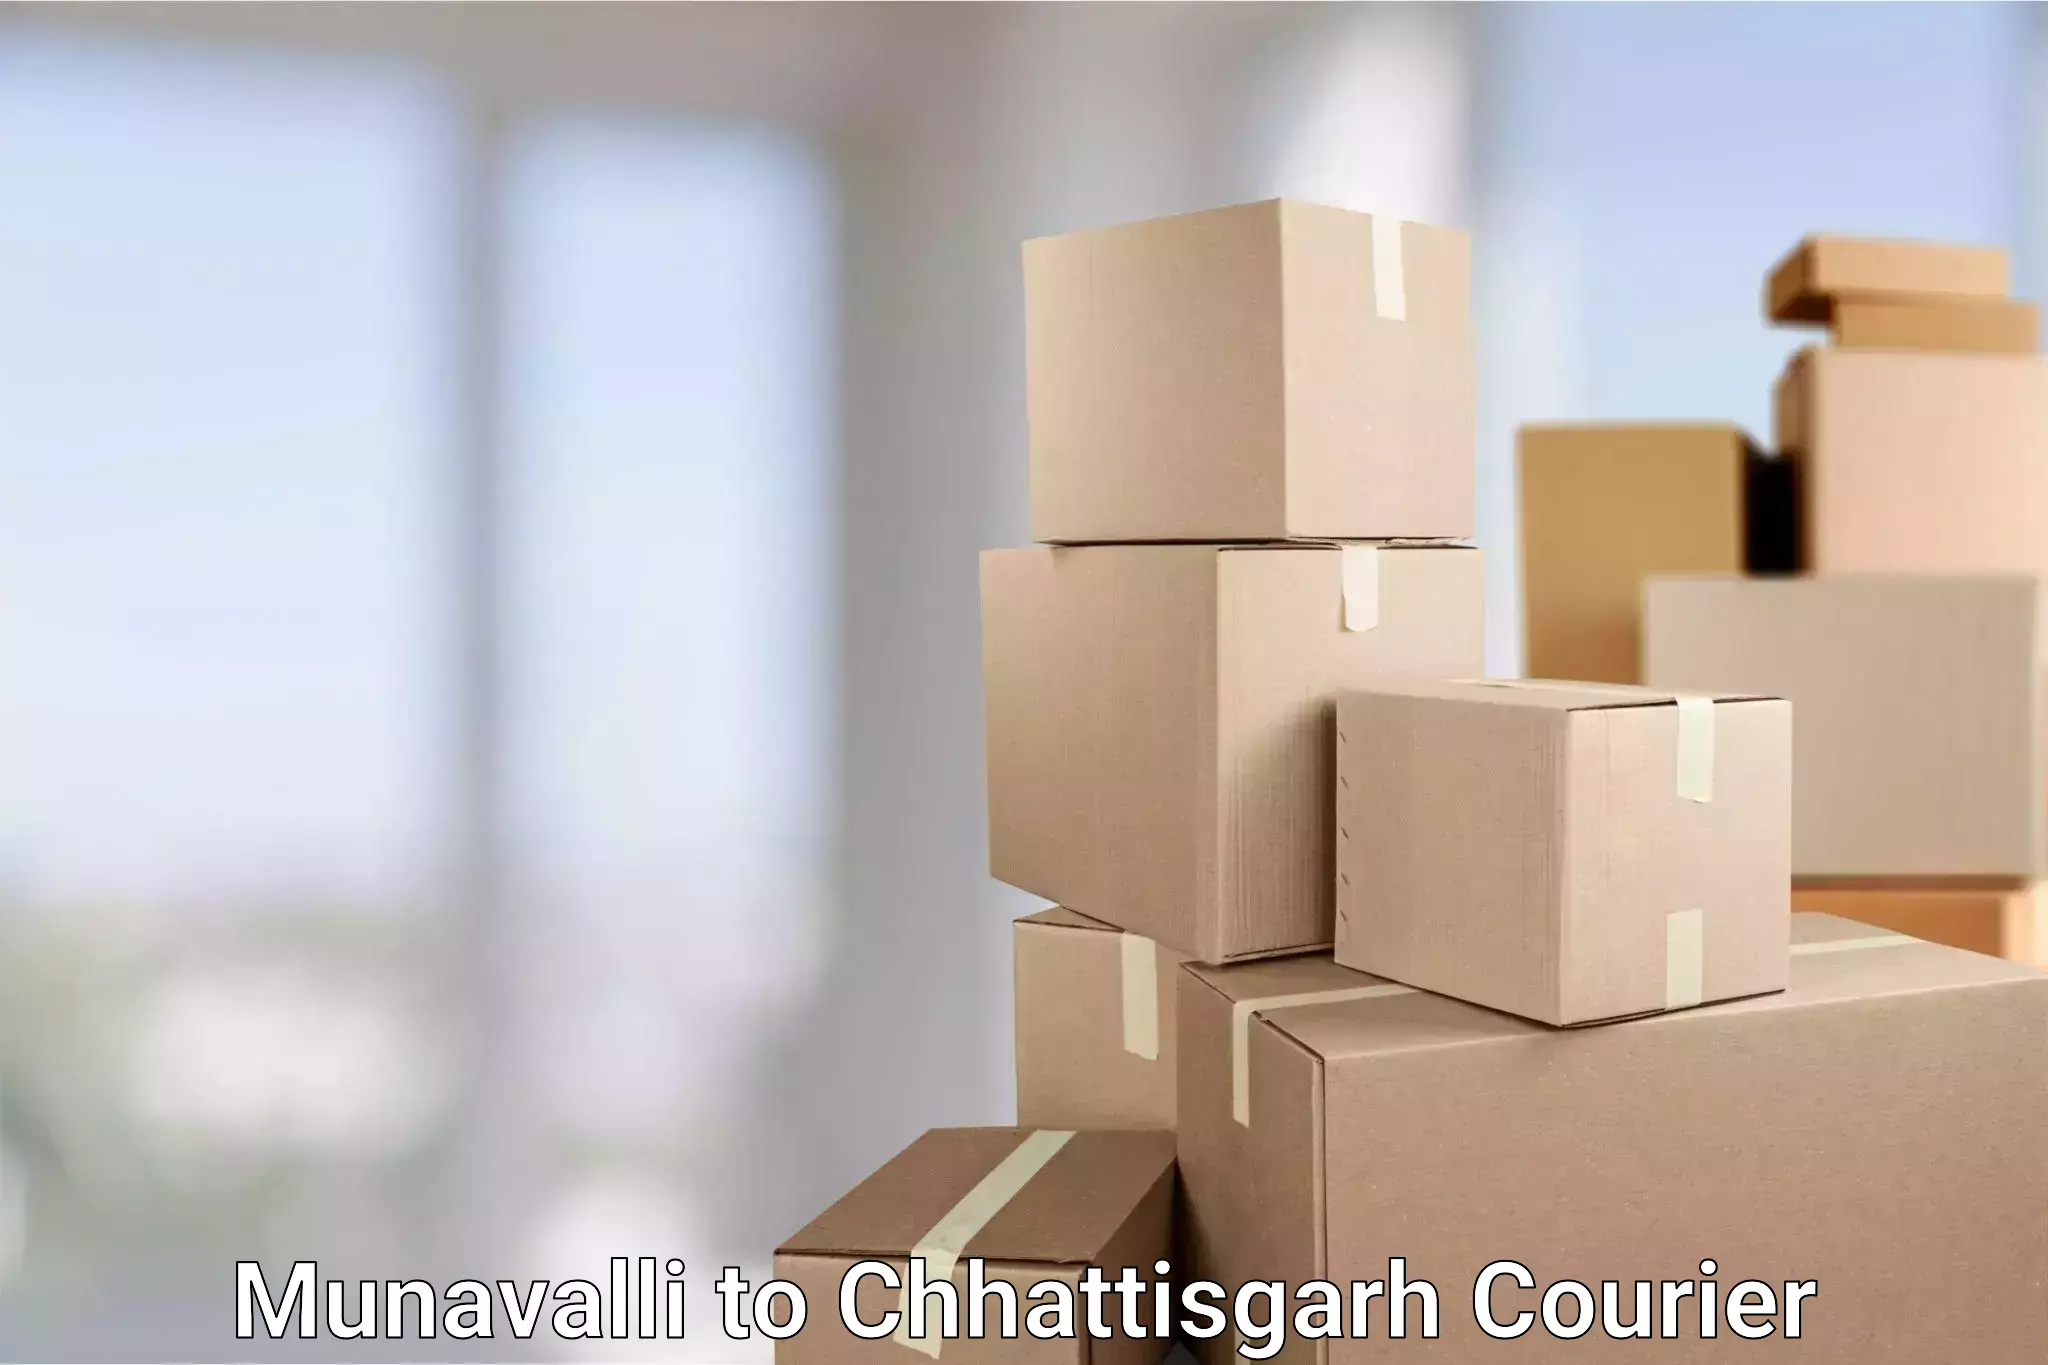 24/7 courier service in Munavalli to Chhattisgarh